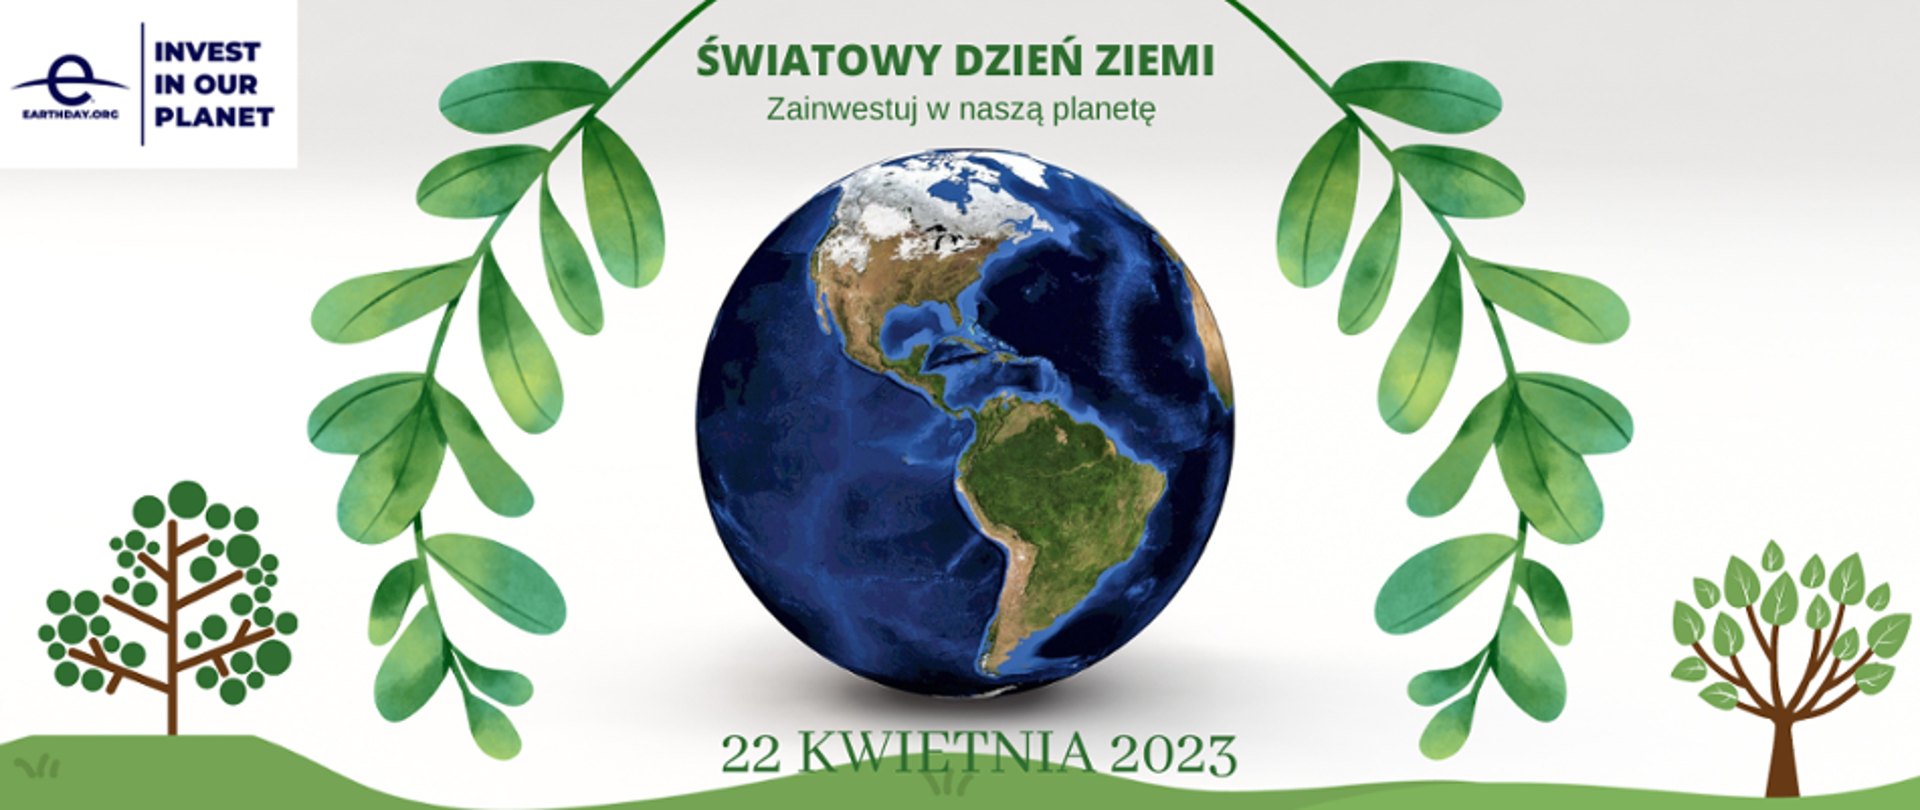 Grafika przedstawiająca kulę ziemską w otoczeniu zielonych gałązek i rysunków drzew. Napis: Światowy Dzień Ziemi. Zainwestuj w naszą planetę. 22 kwietnia 2023